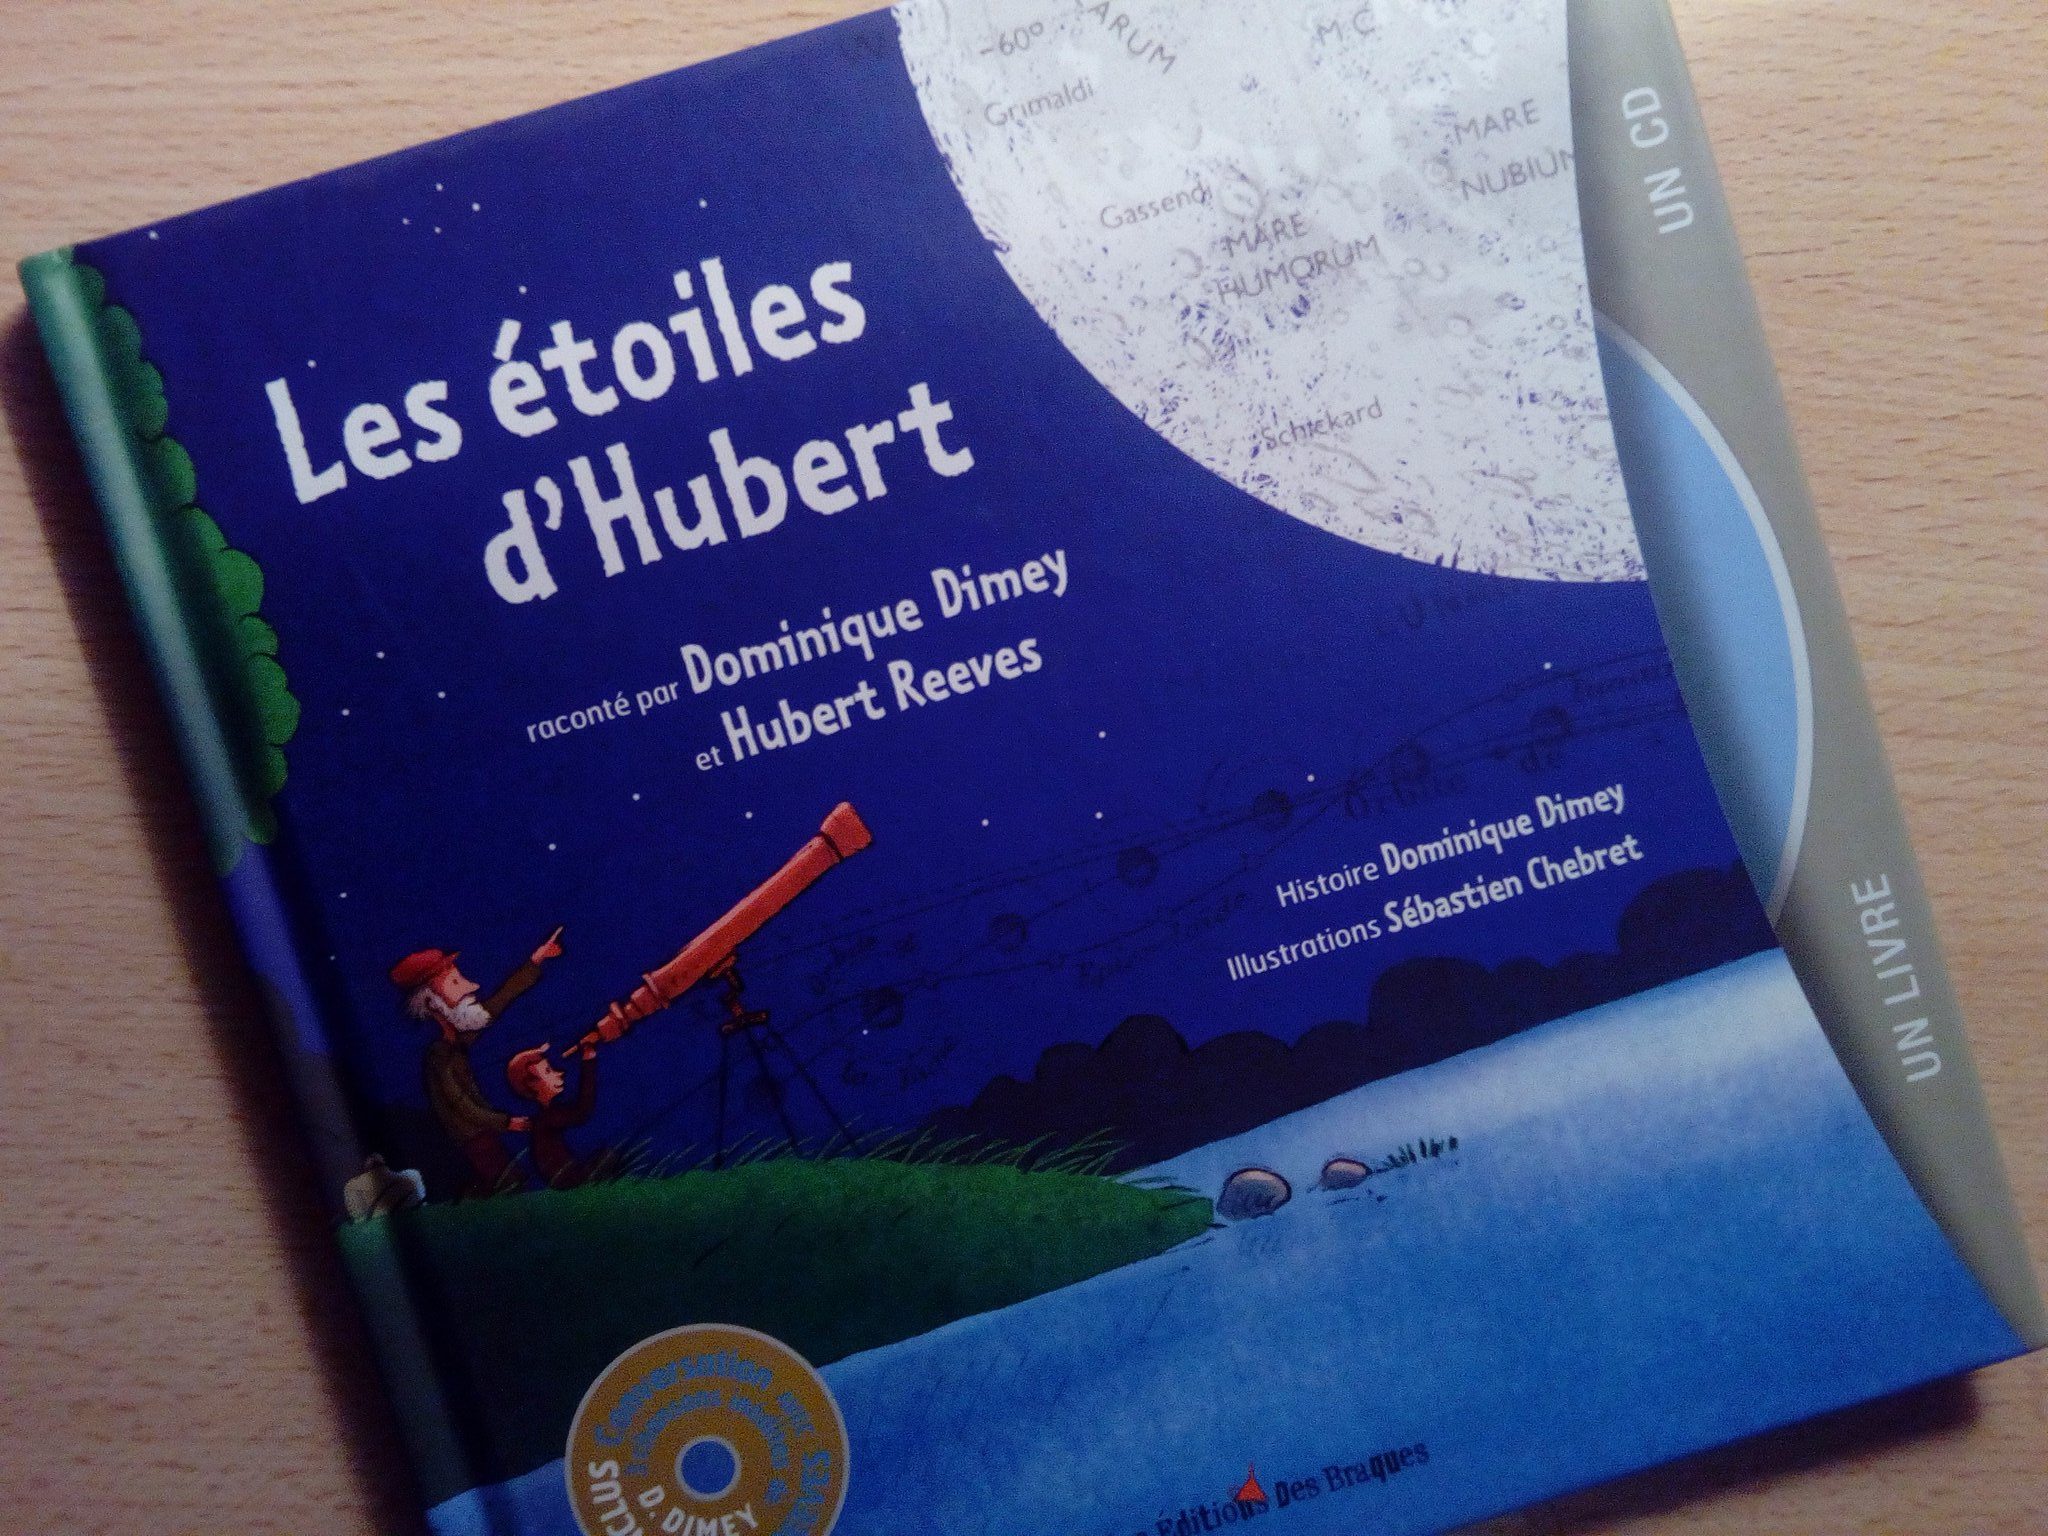 Les étoiles d'Hubert : un livre et un CD pour découvrir les